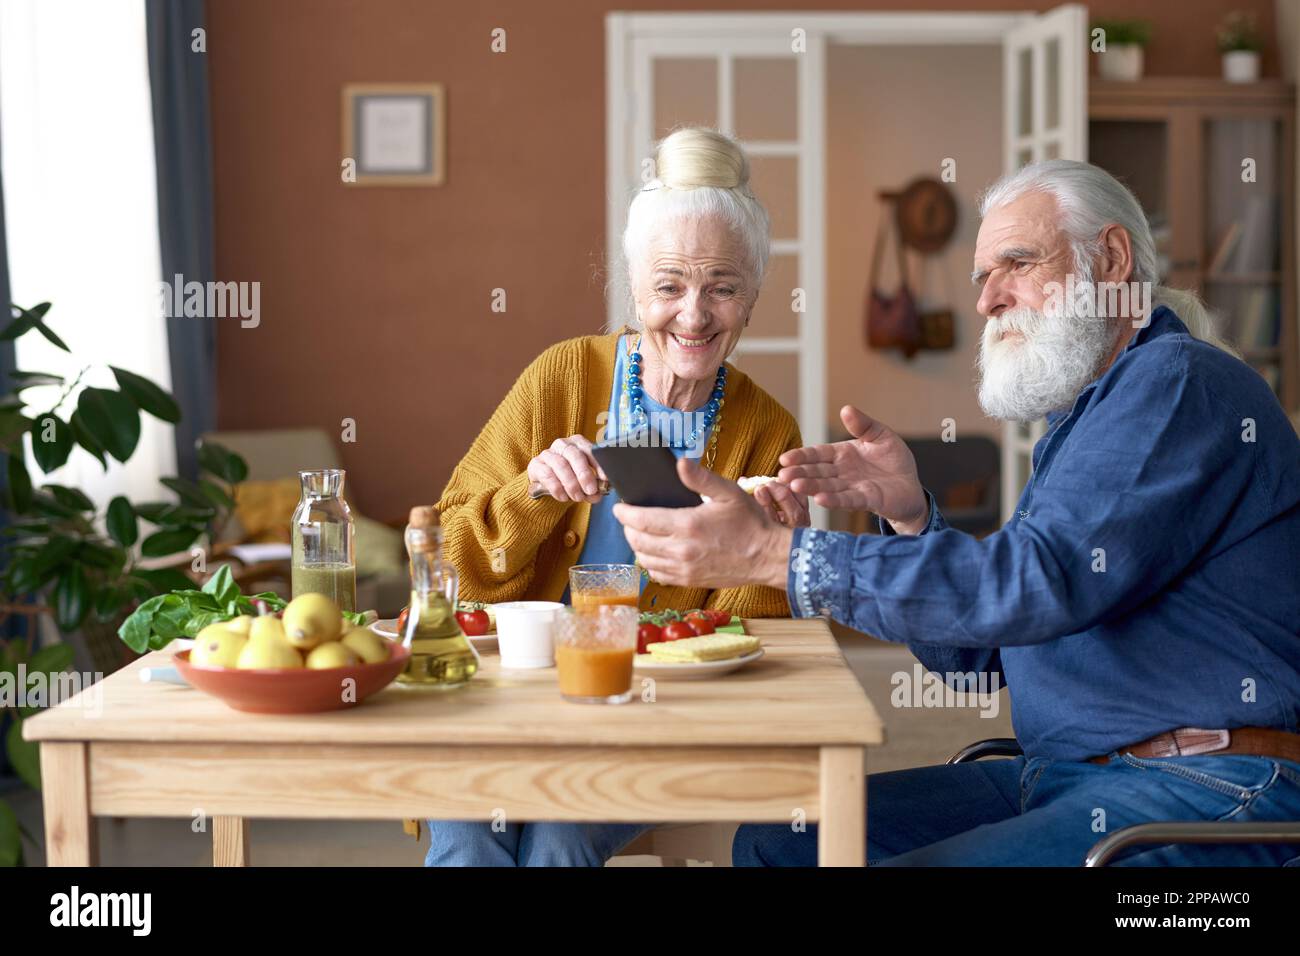 Ein älterer Mann zeigte auf den Bildschirm des Smartphones und sprach mit seiner Frau während des Frühstücks zu Hause am Tisch Stockfoto